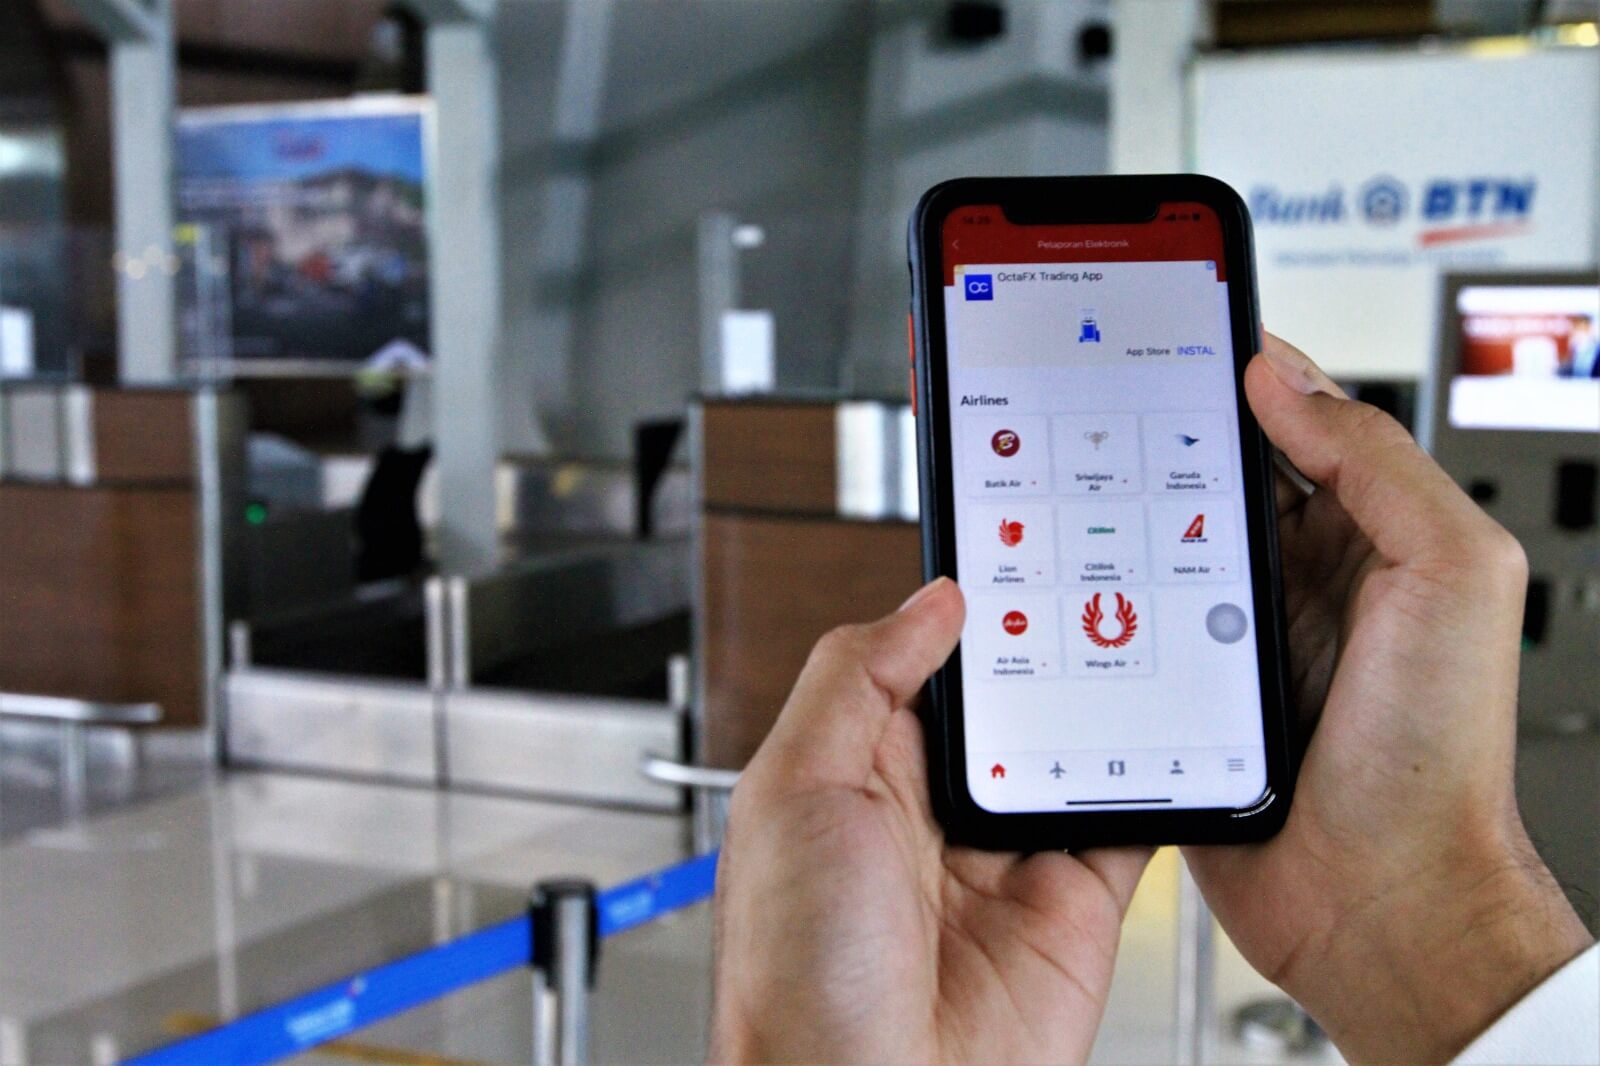 Download Aplikasi Ini Sekarang! Terbang Lebih Menyenangkan di Bandara Sultan Thaha Jambi